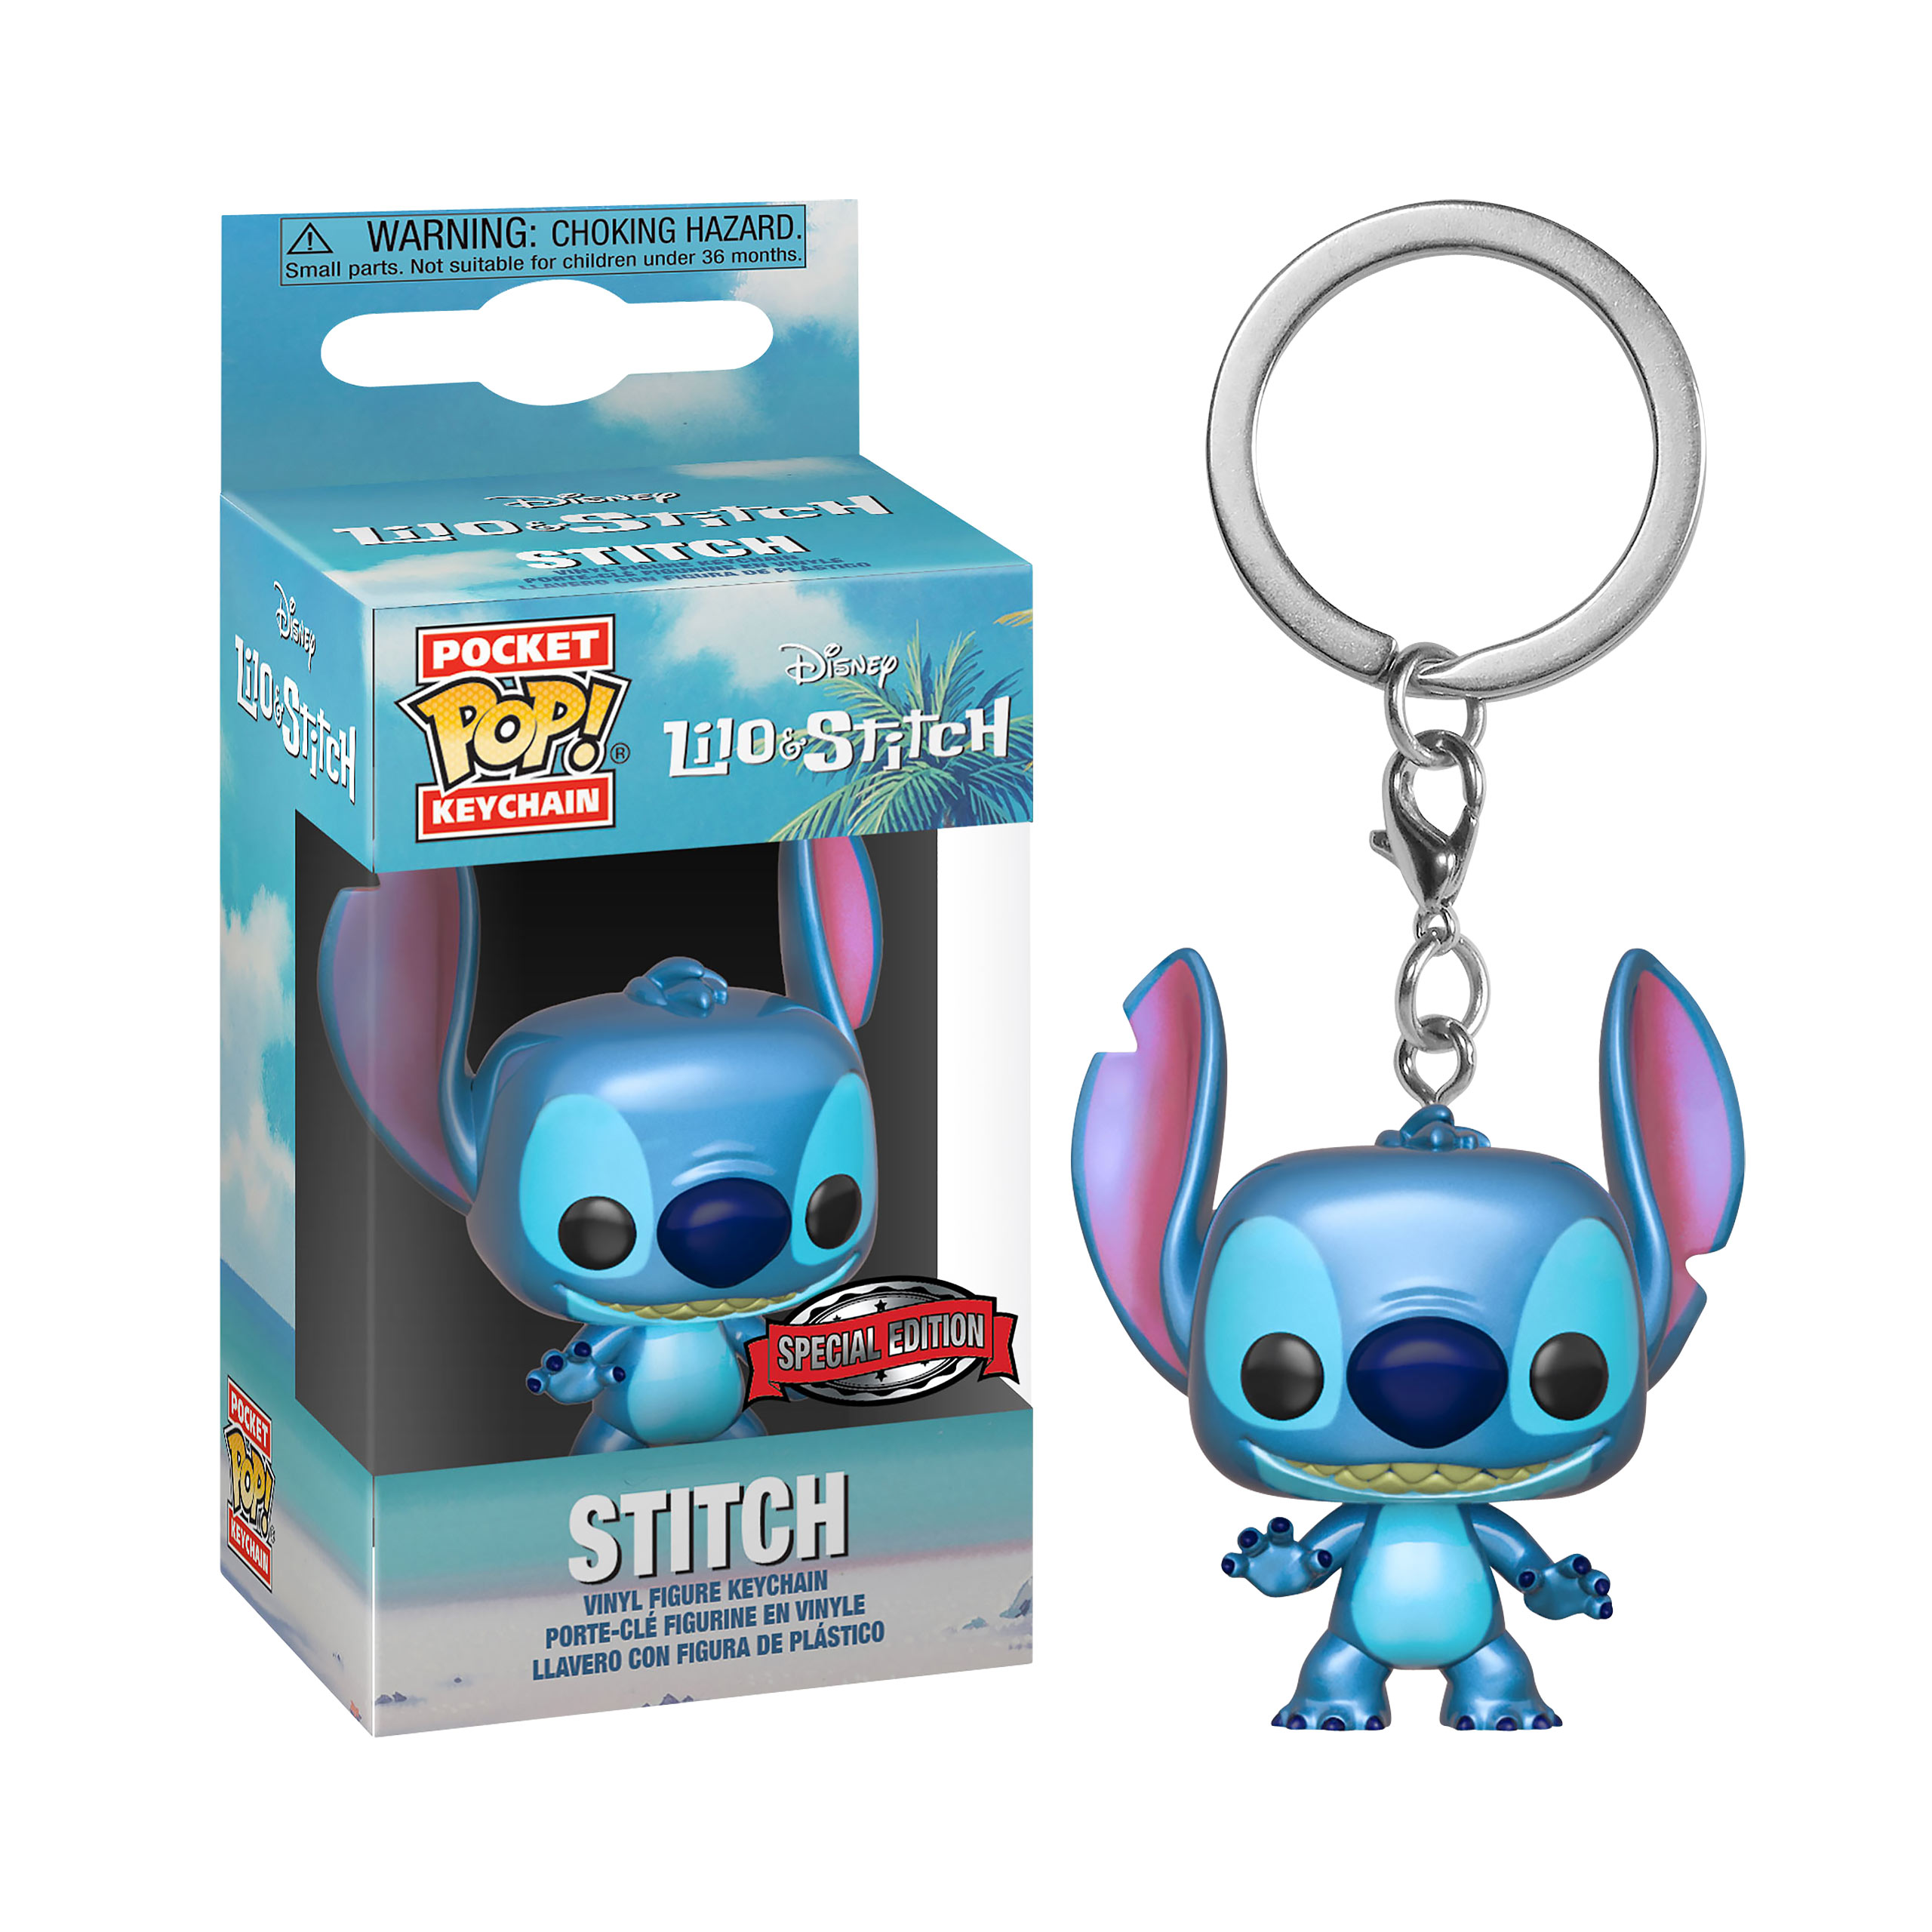 Lilo & Stitch - Metallic Stitch Funko Pop Keychain